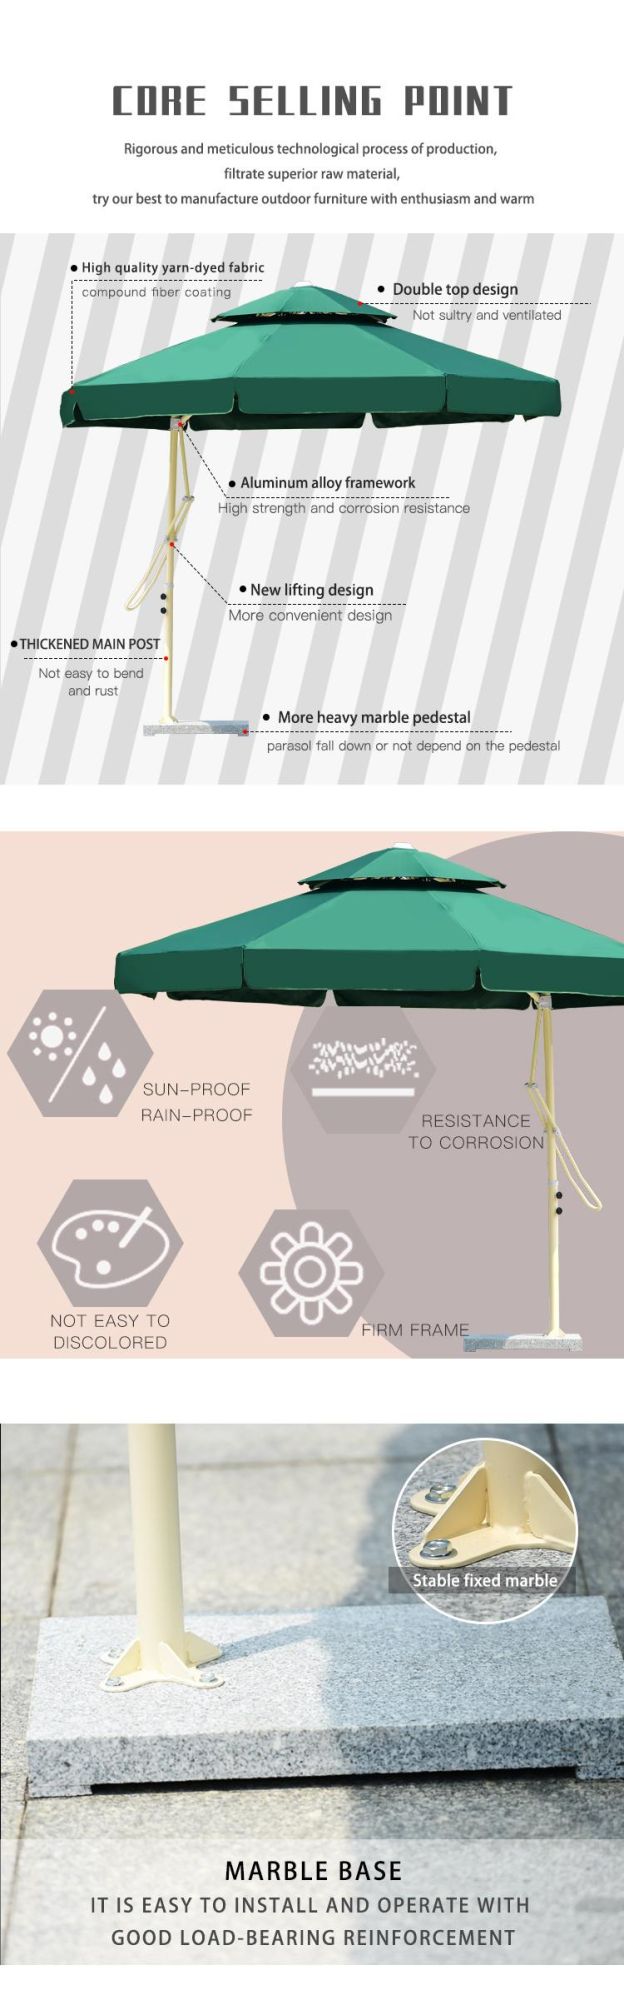 3m Outdoor Patio Garden Open-Air Sunshade Wrench Umbrella